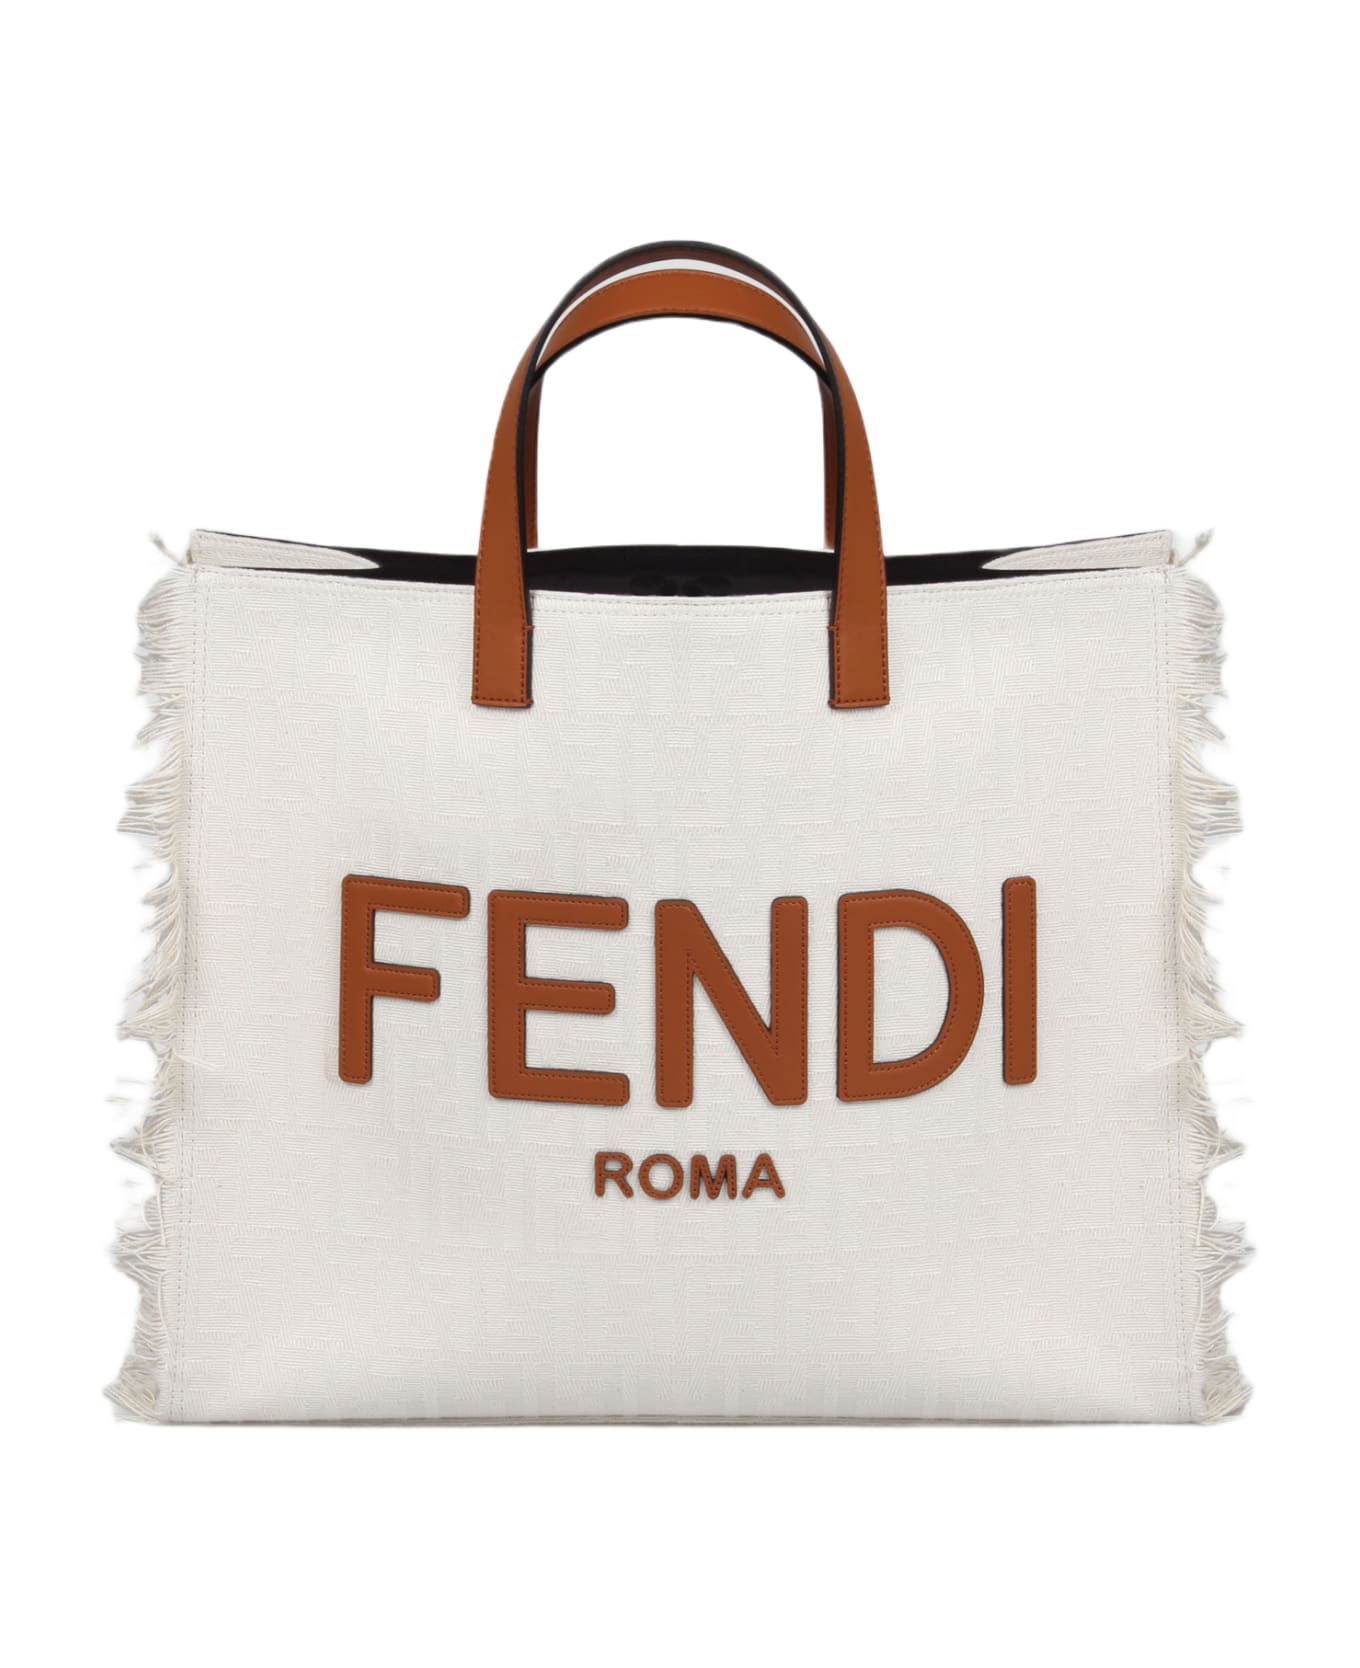 Fendi Ff Shopper Bag - White